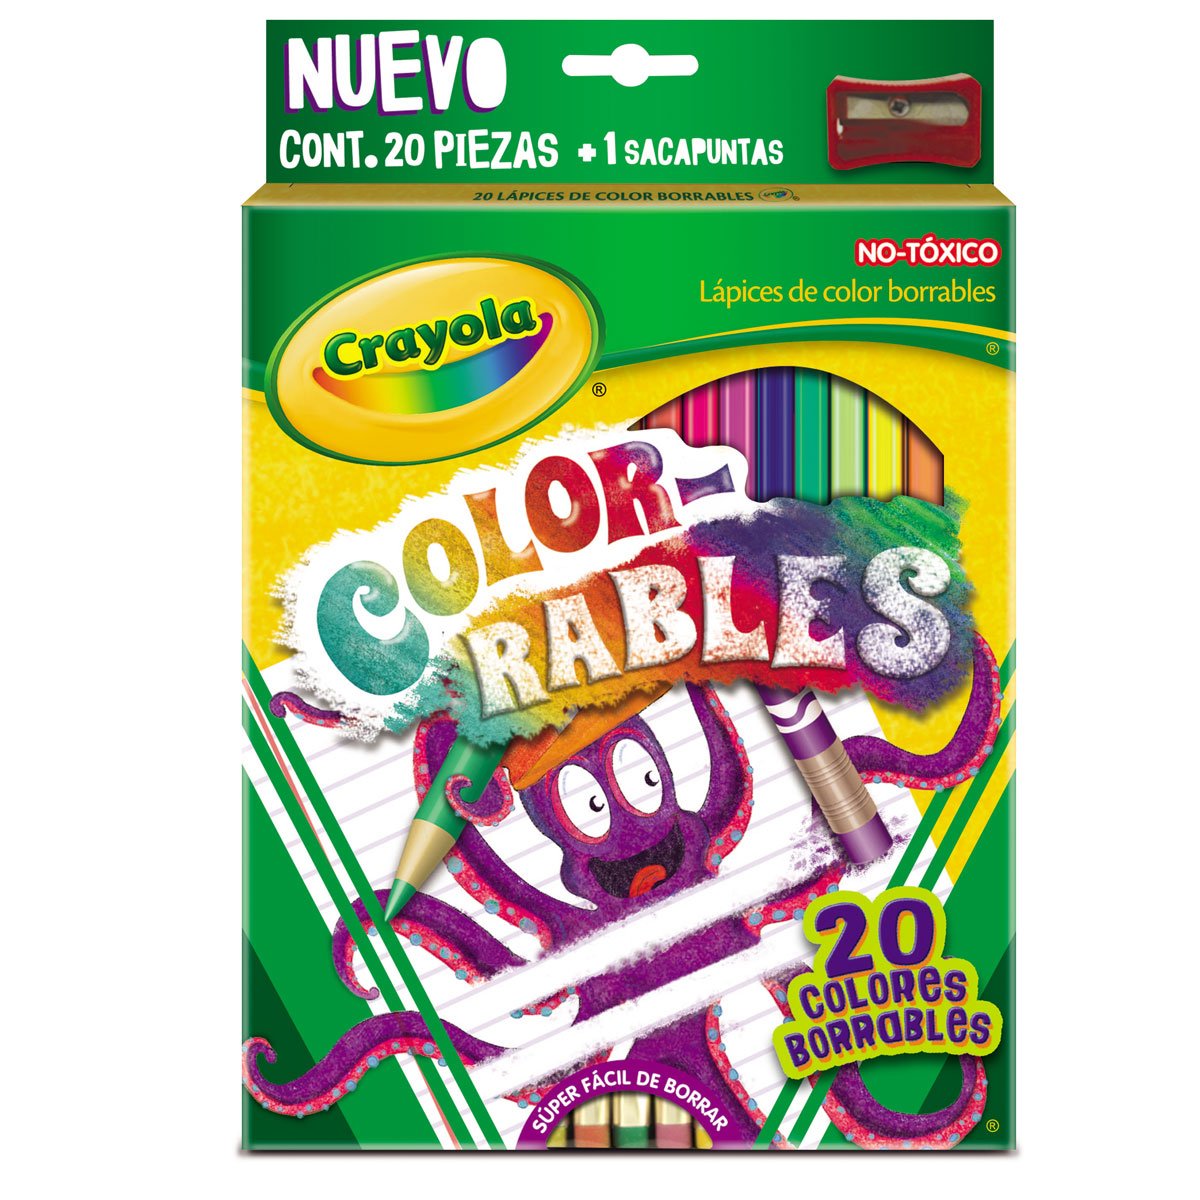 Colores Borrables con 20 Piezas Crayola